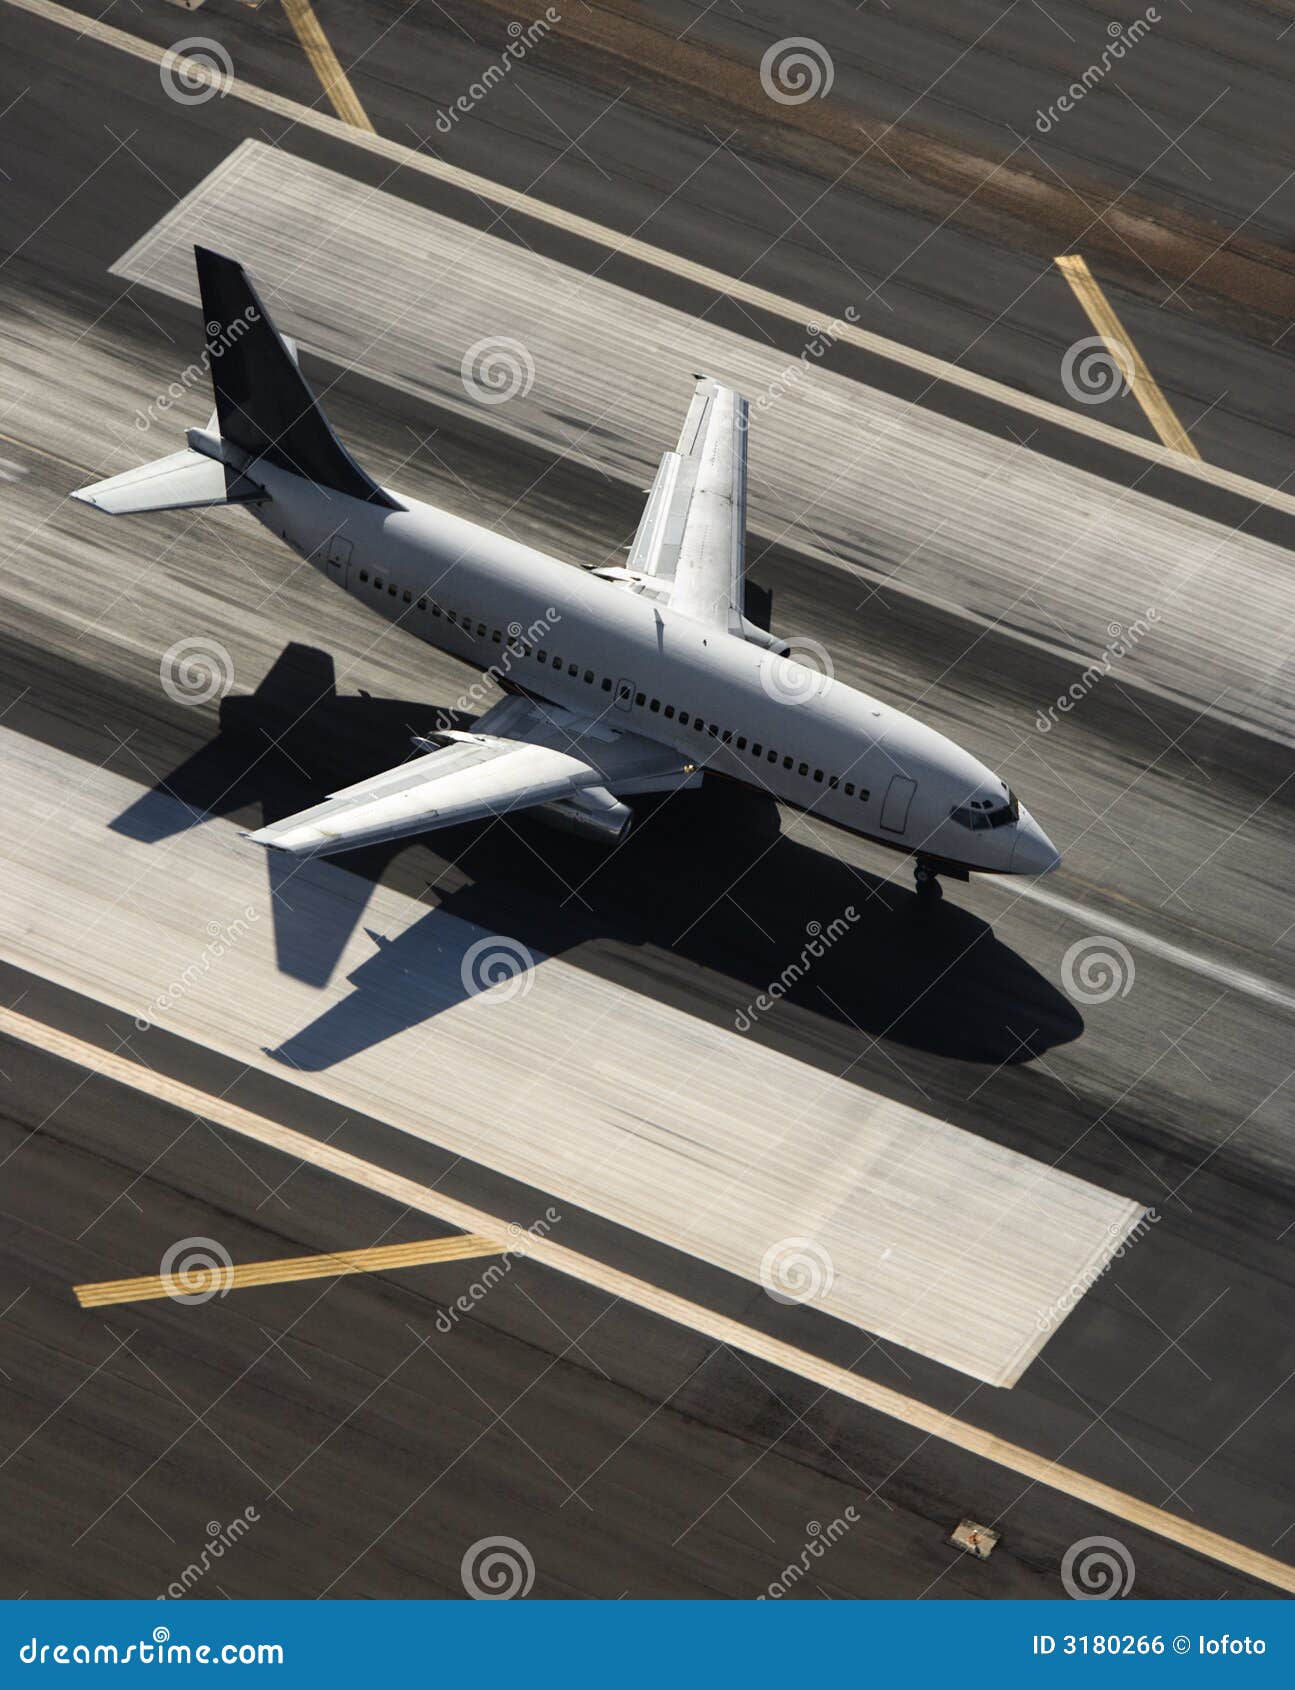 airplane on runway.